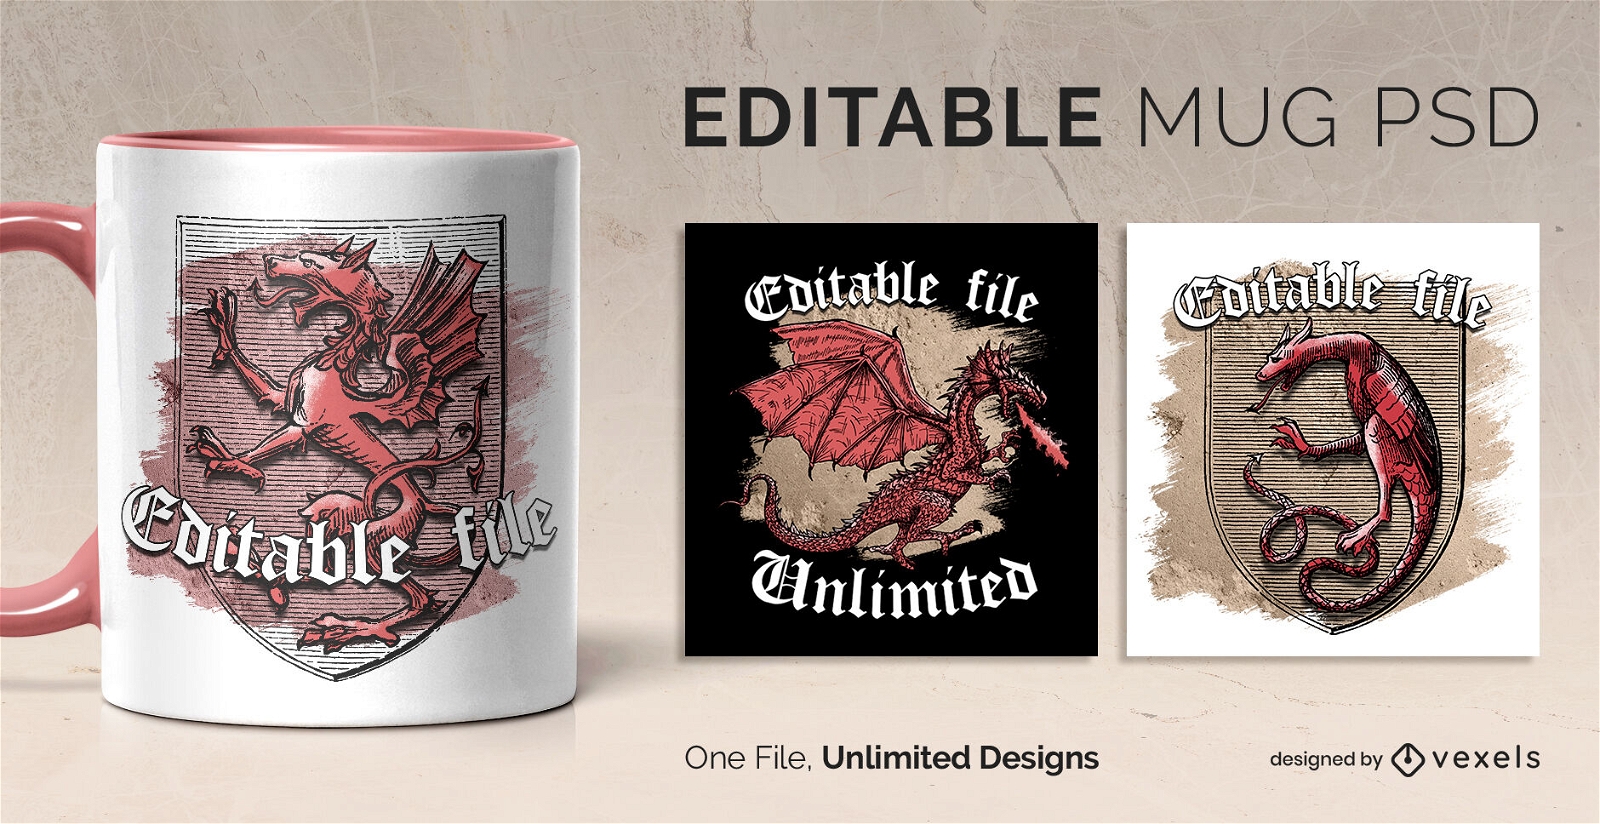 Dragon badge scalable mug design